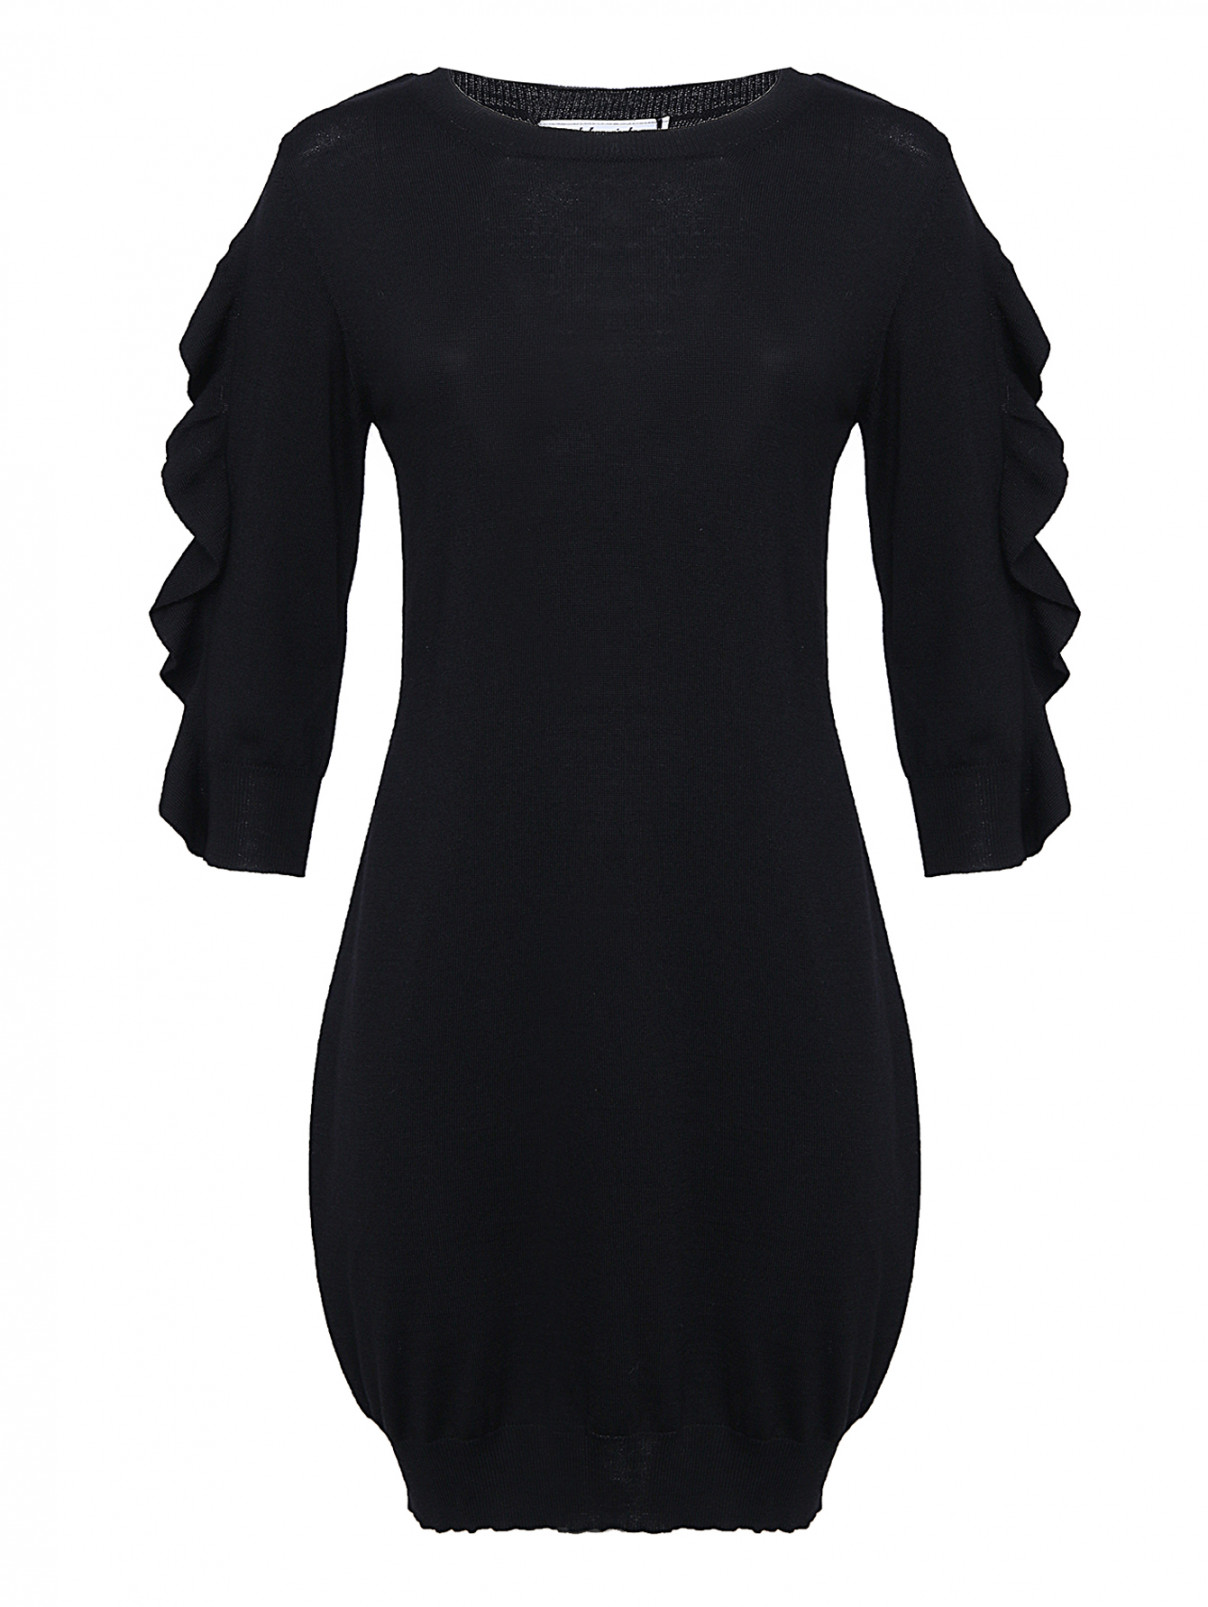 Трикотажное платье с воланами на рукавах Blugirl  –  Общий вид  – Цвет:  Черный